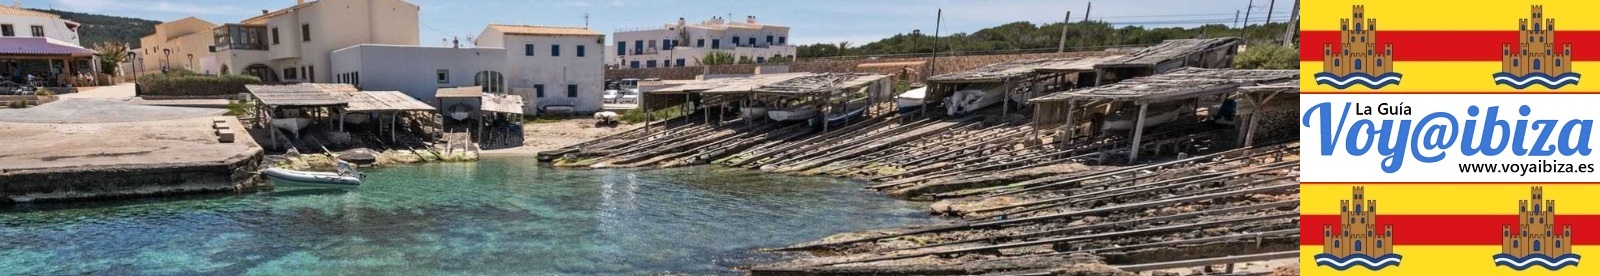 Formentera isla: Vistas varias (I)